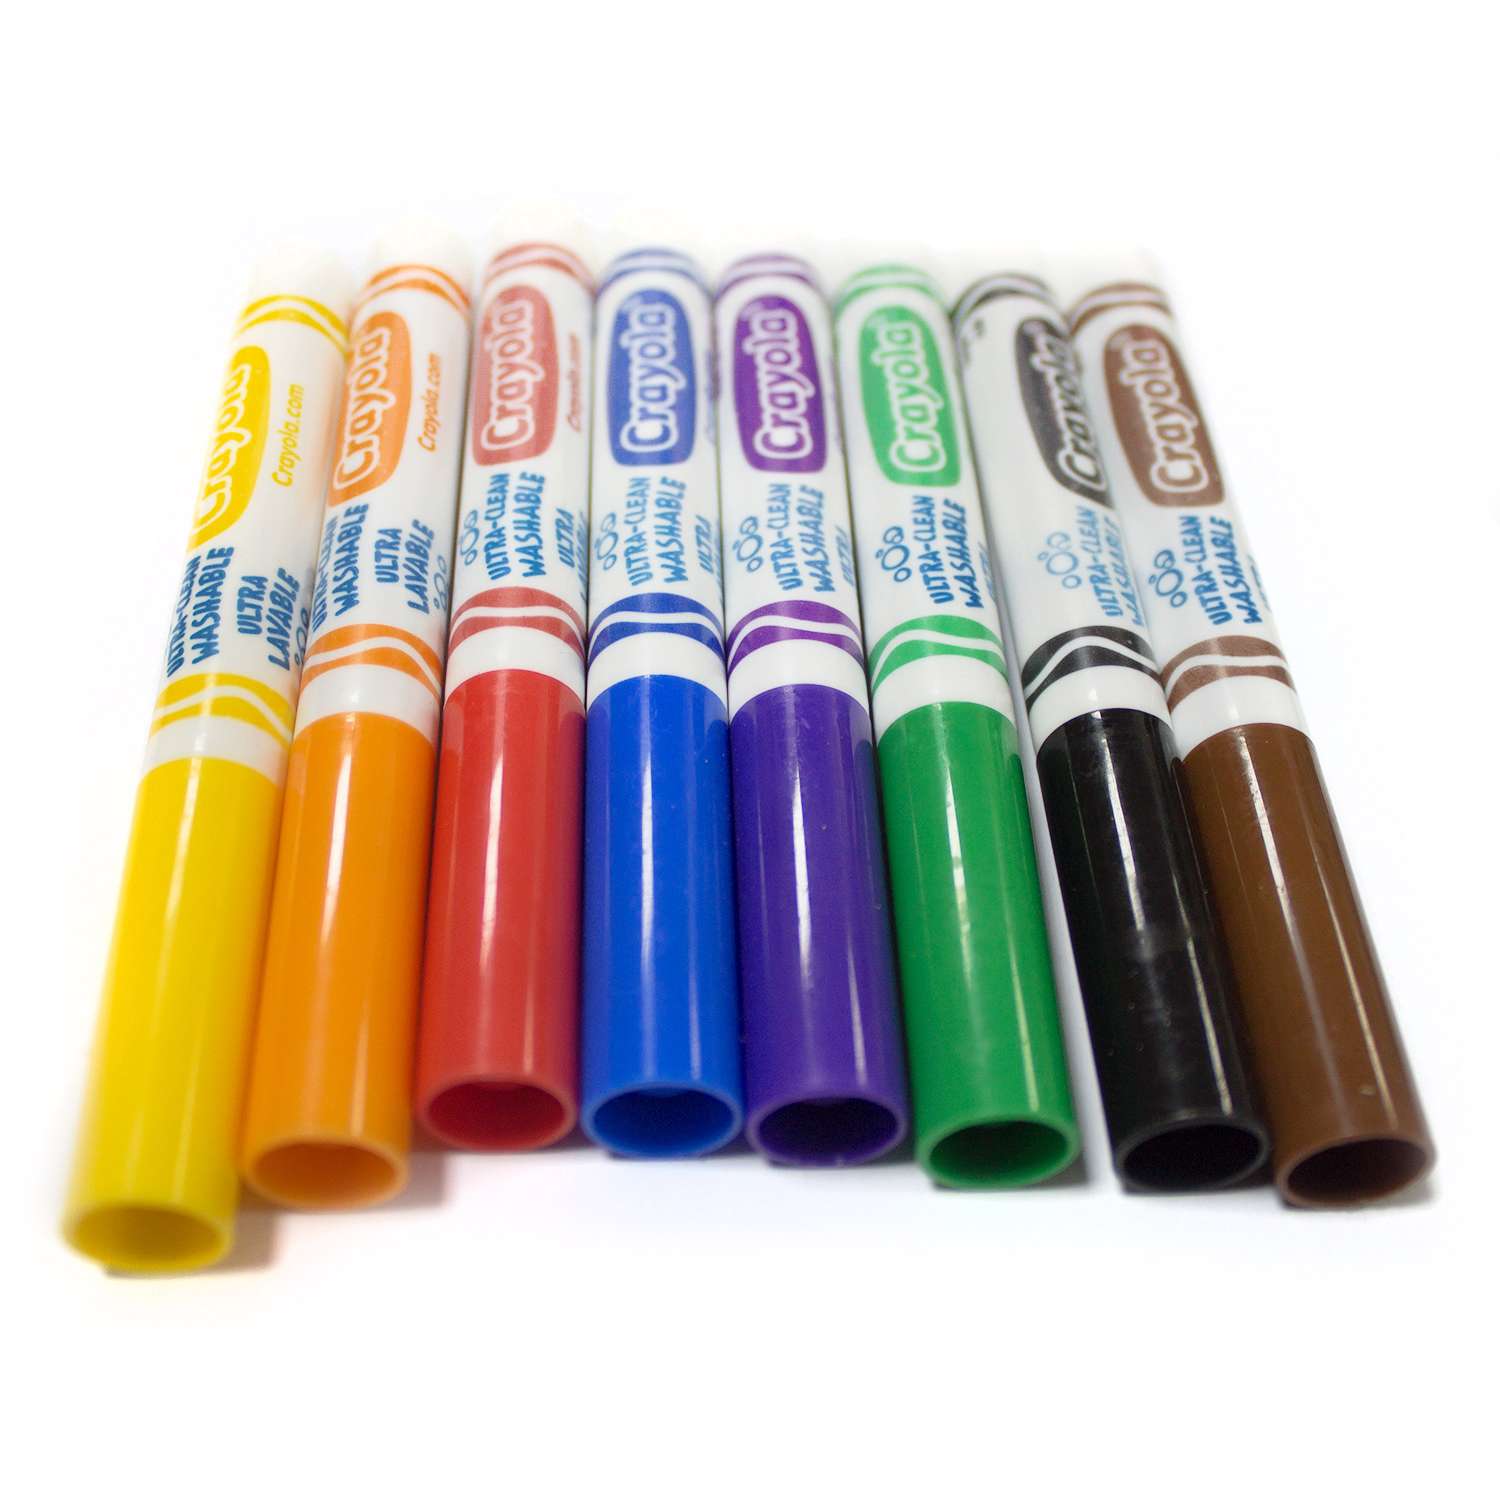 Смываемые фломастеры Crayola Супер чисто с толстым наконечником, 8 шт. - фото 4